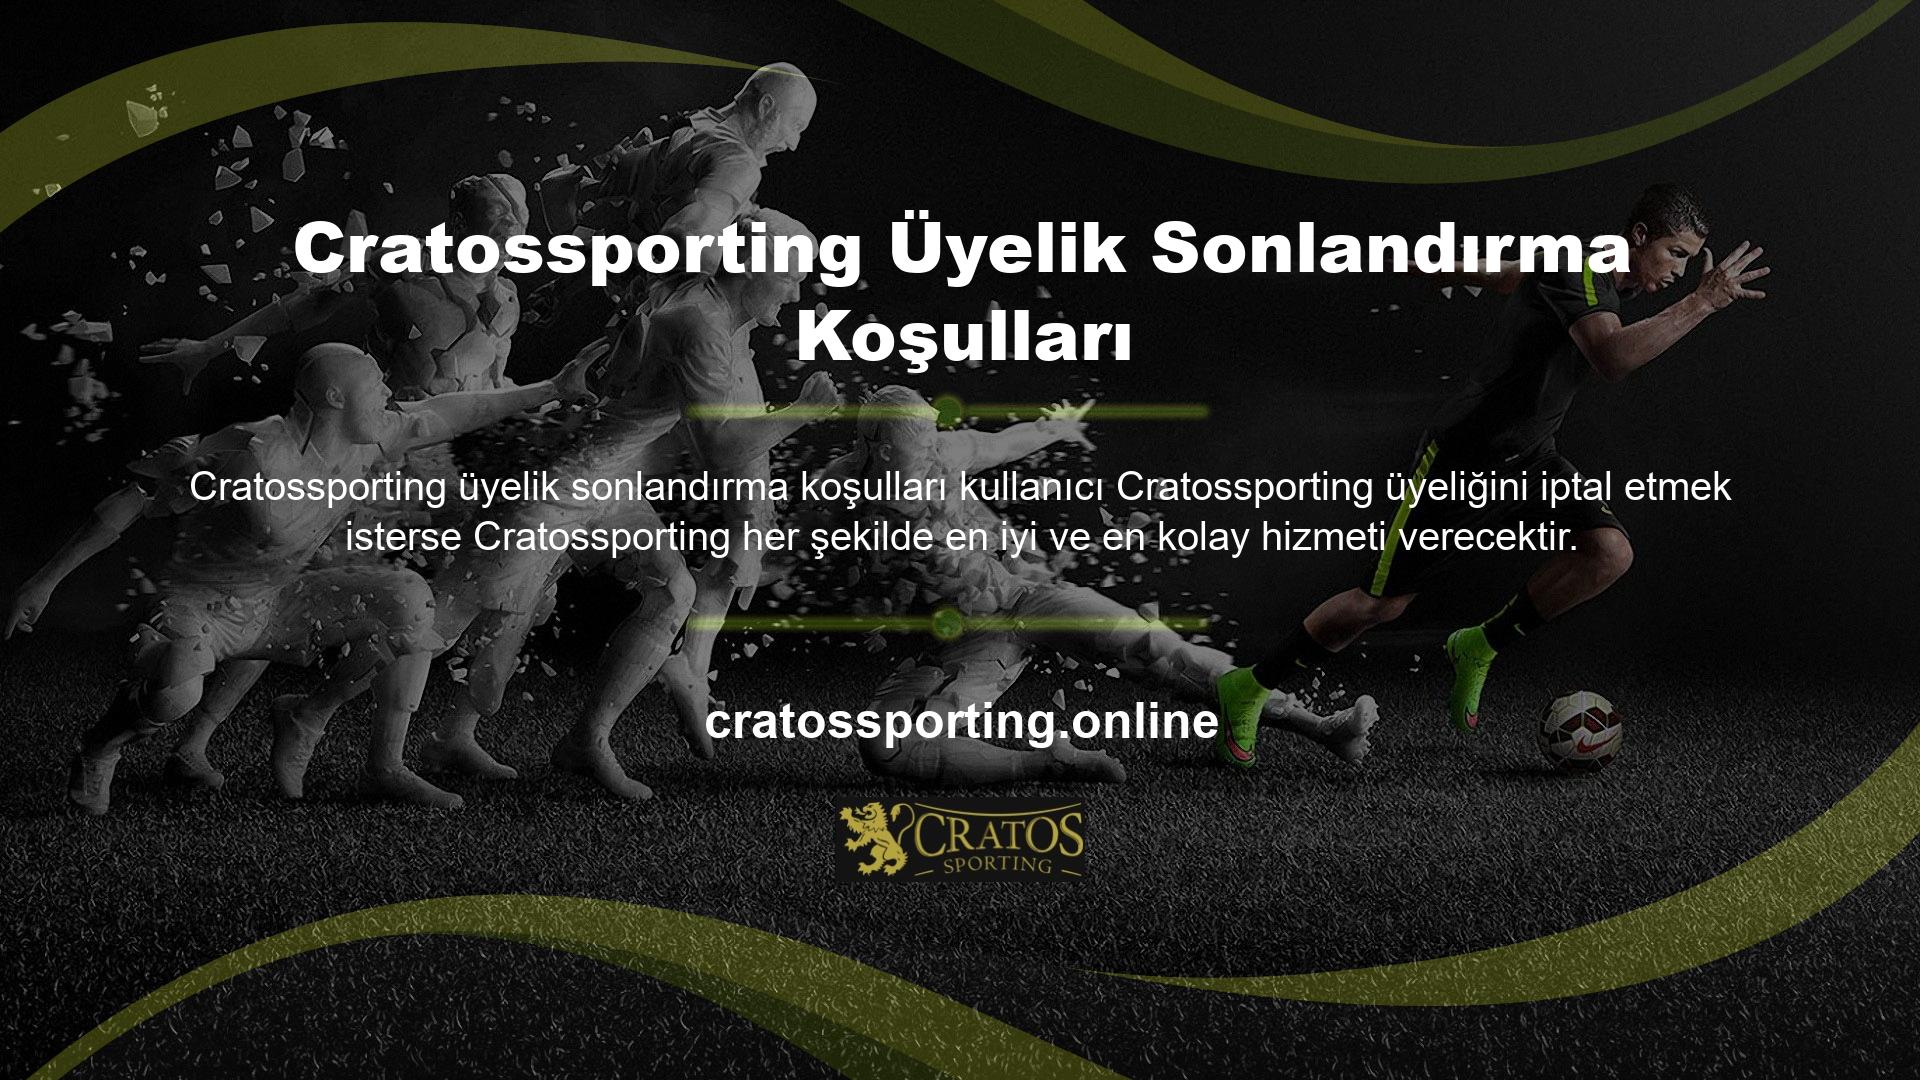 Cratossporting ile çevrimiçi destek veya çeşitli müşteri hizmetleri kanalları aracılığıyla iletişime geçebilirsiniz